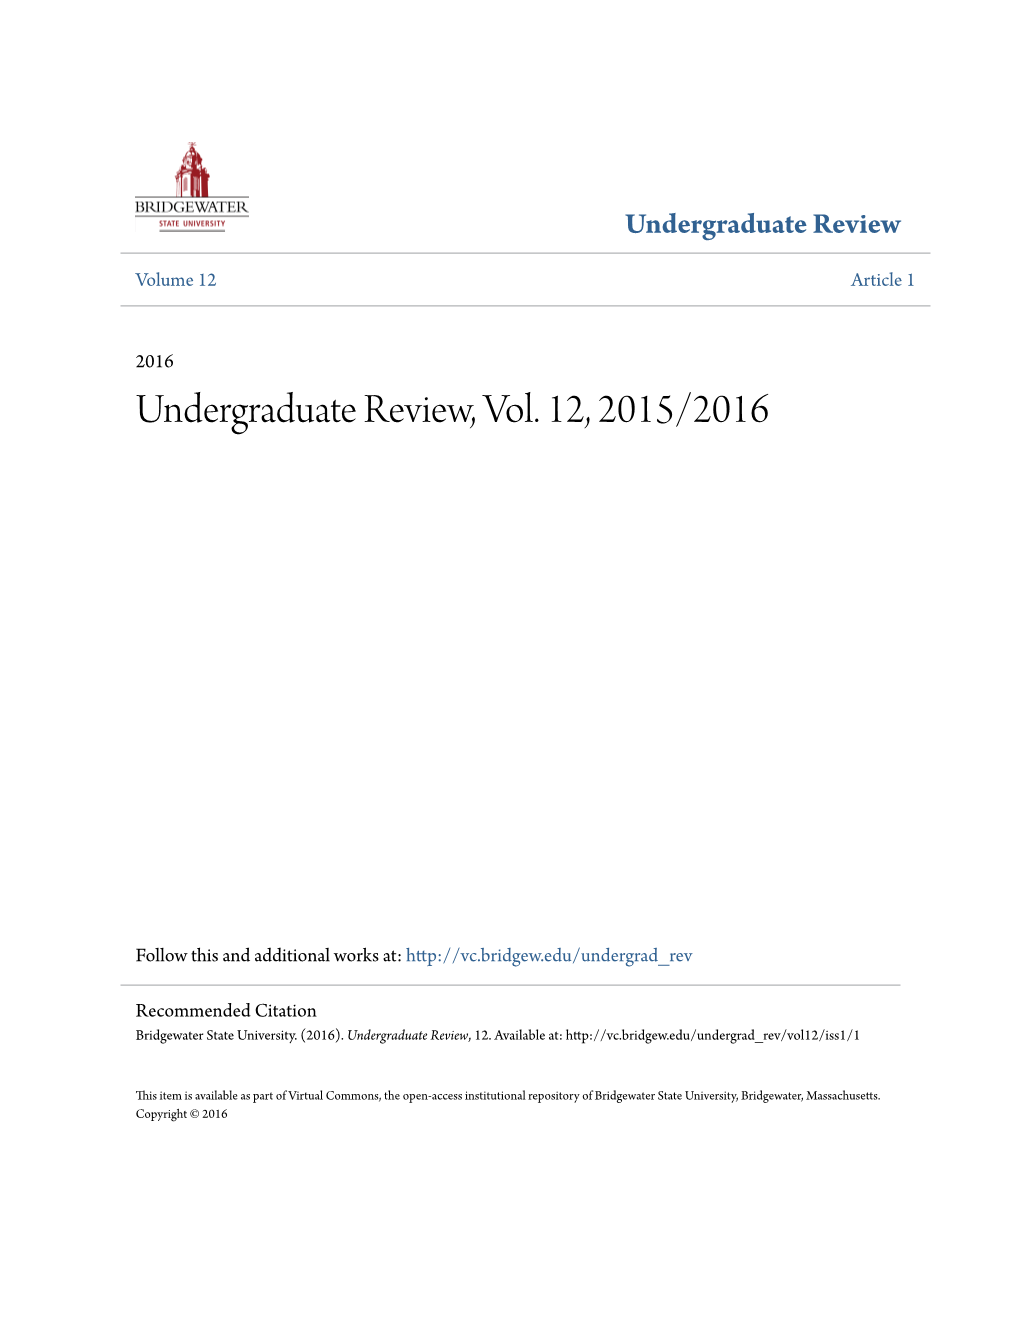 Undergraduate Review Volume 12 Article 1 2016 Undergraduate